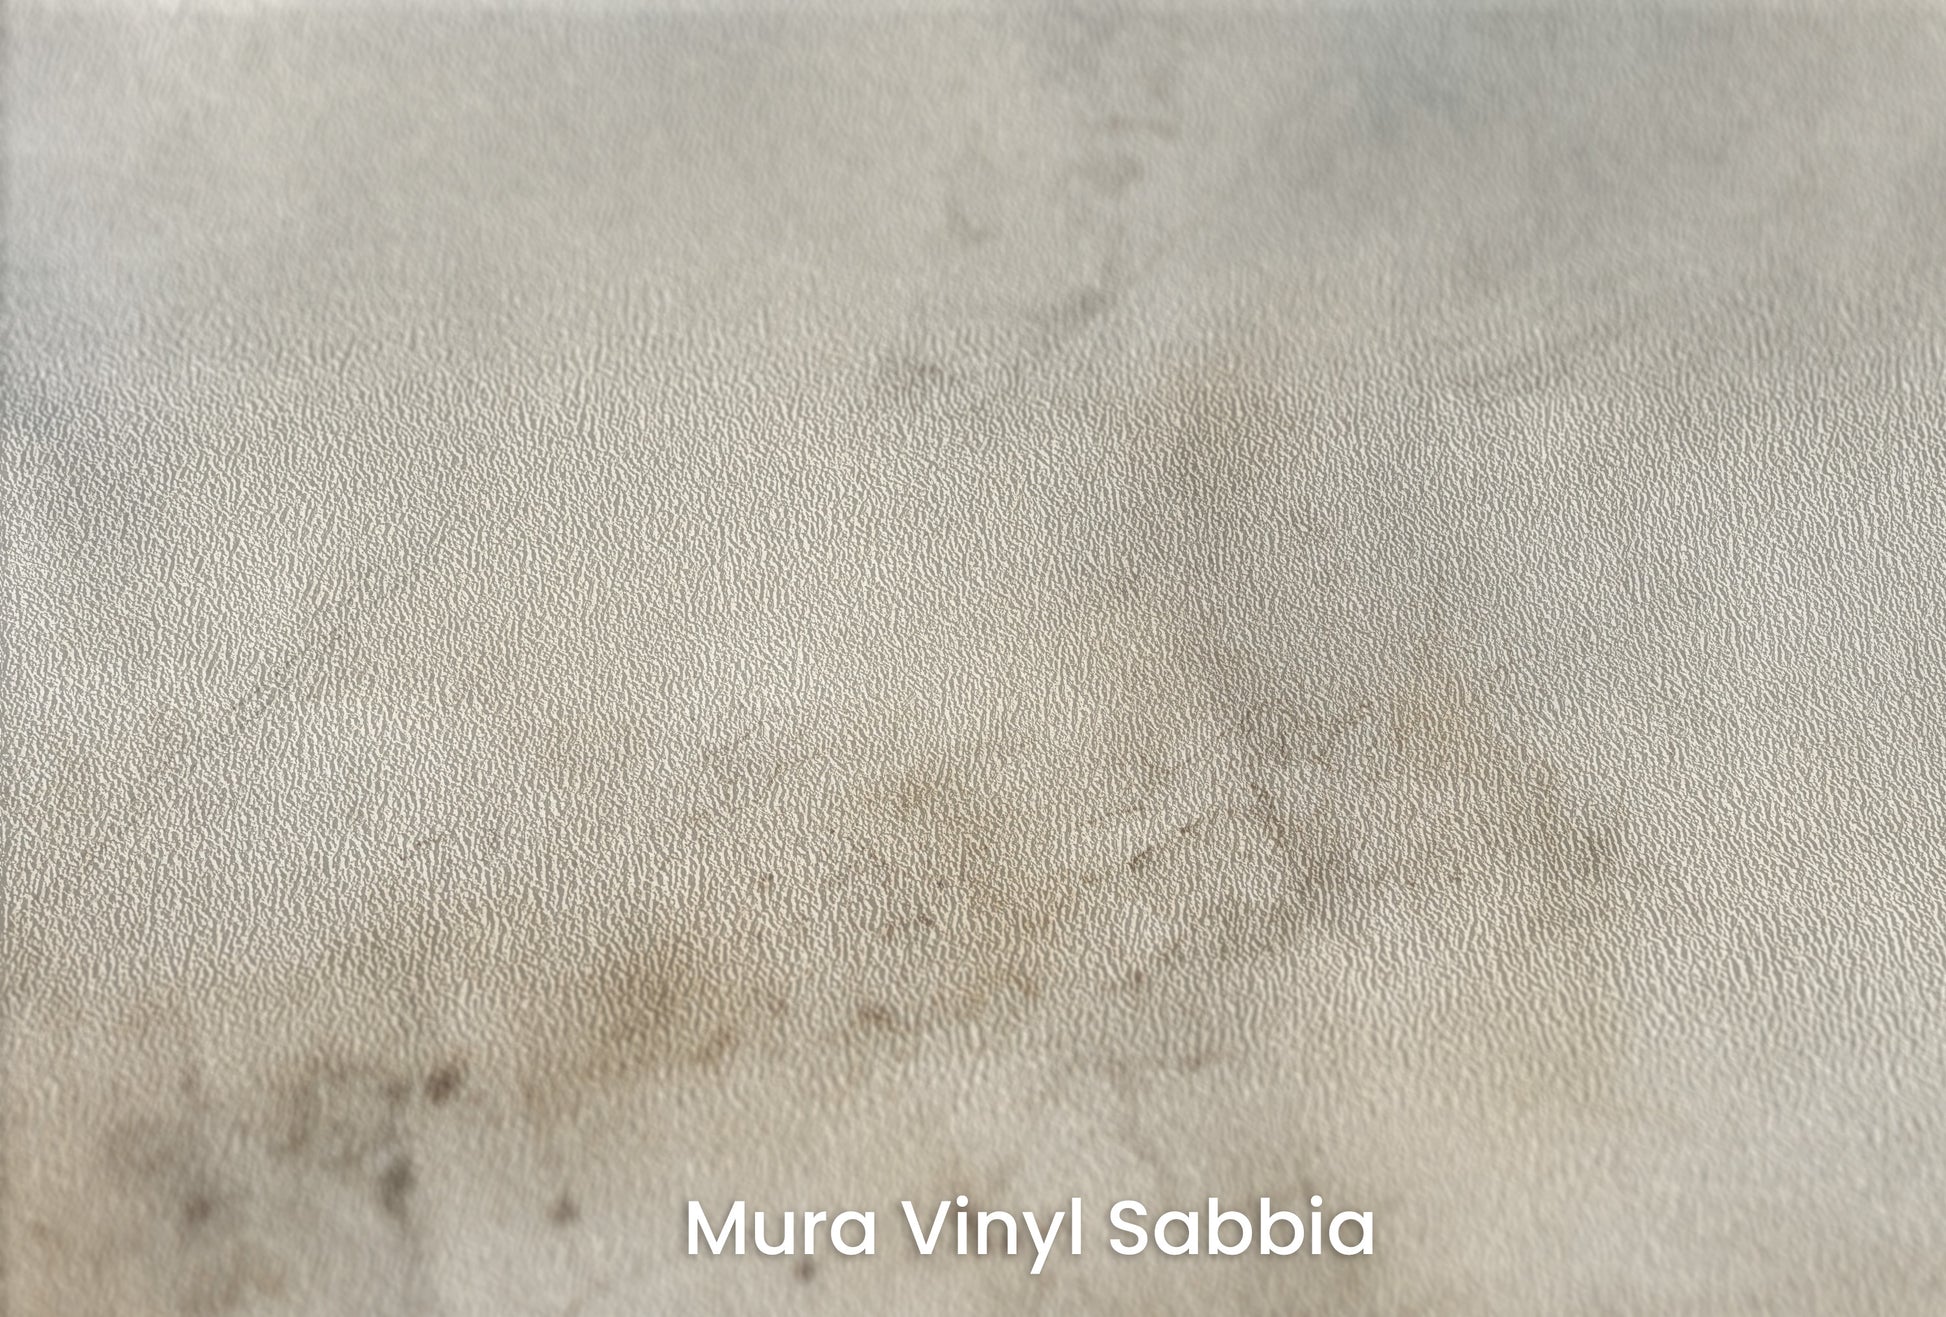 Zbliżenie na artystyczną fototapetę o nazwie STORM FRONT WHISPER na podłożu Mura Vinyl Sabbia struktura grubego ziarna piasku.